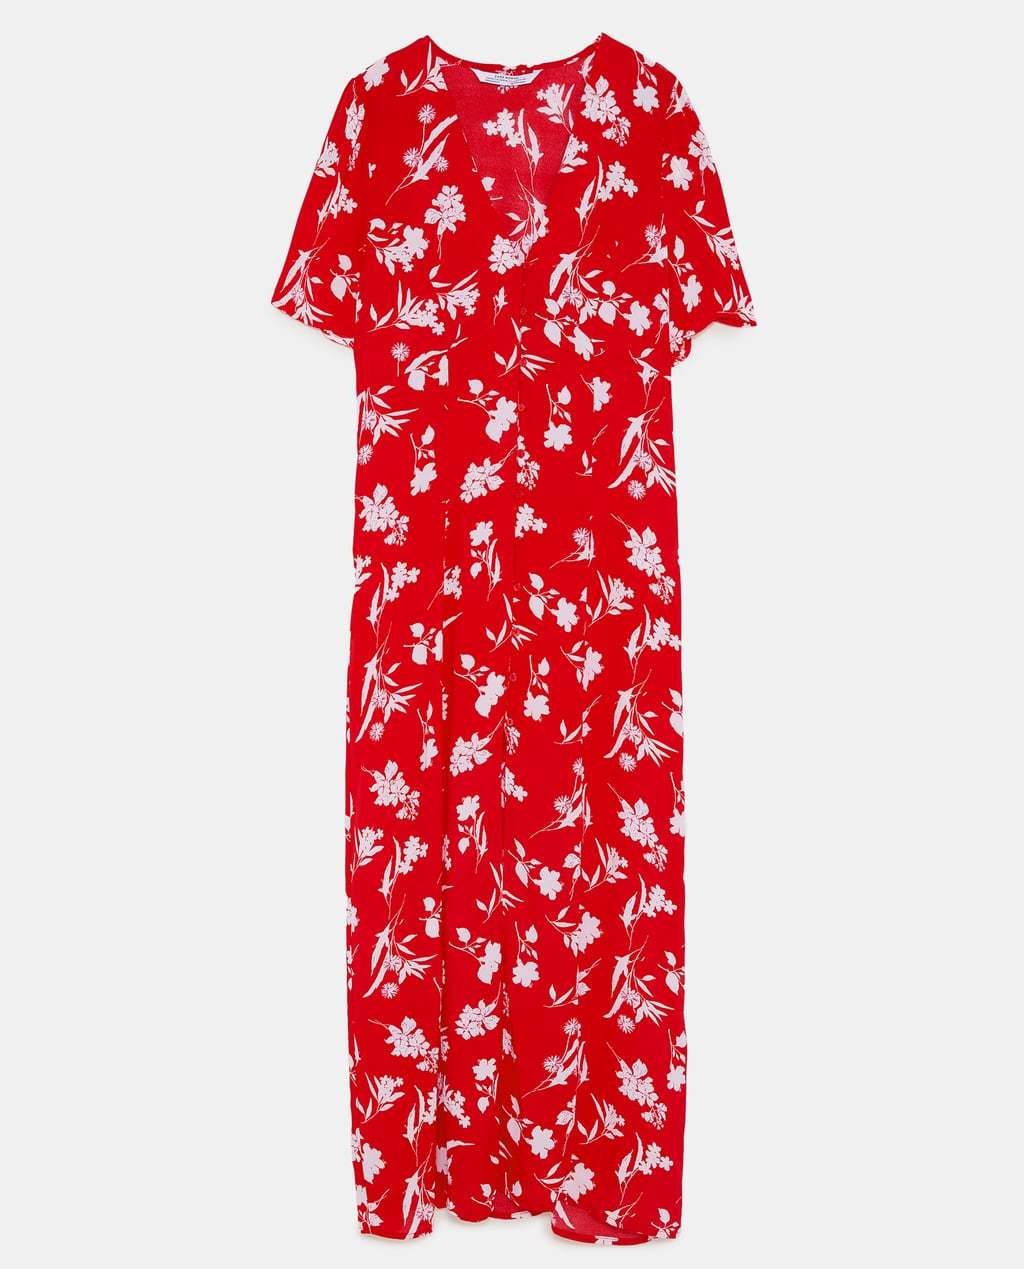 Vestido estampado floral de Zara por 39,99 euros.